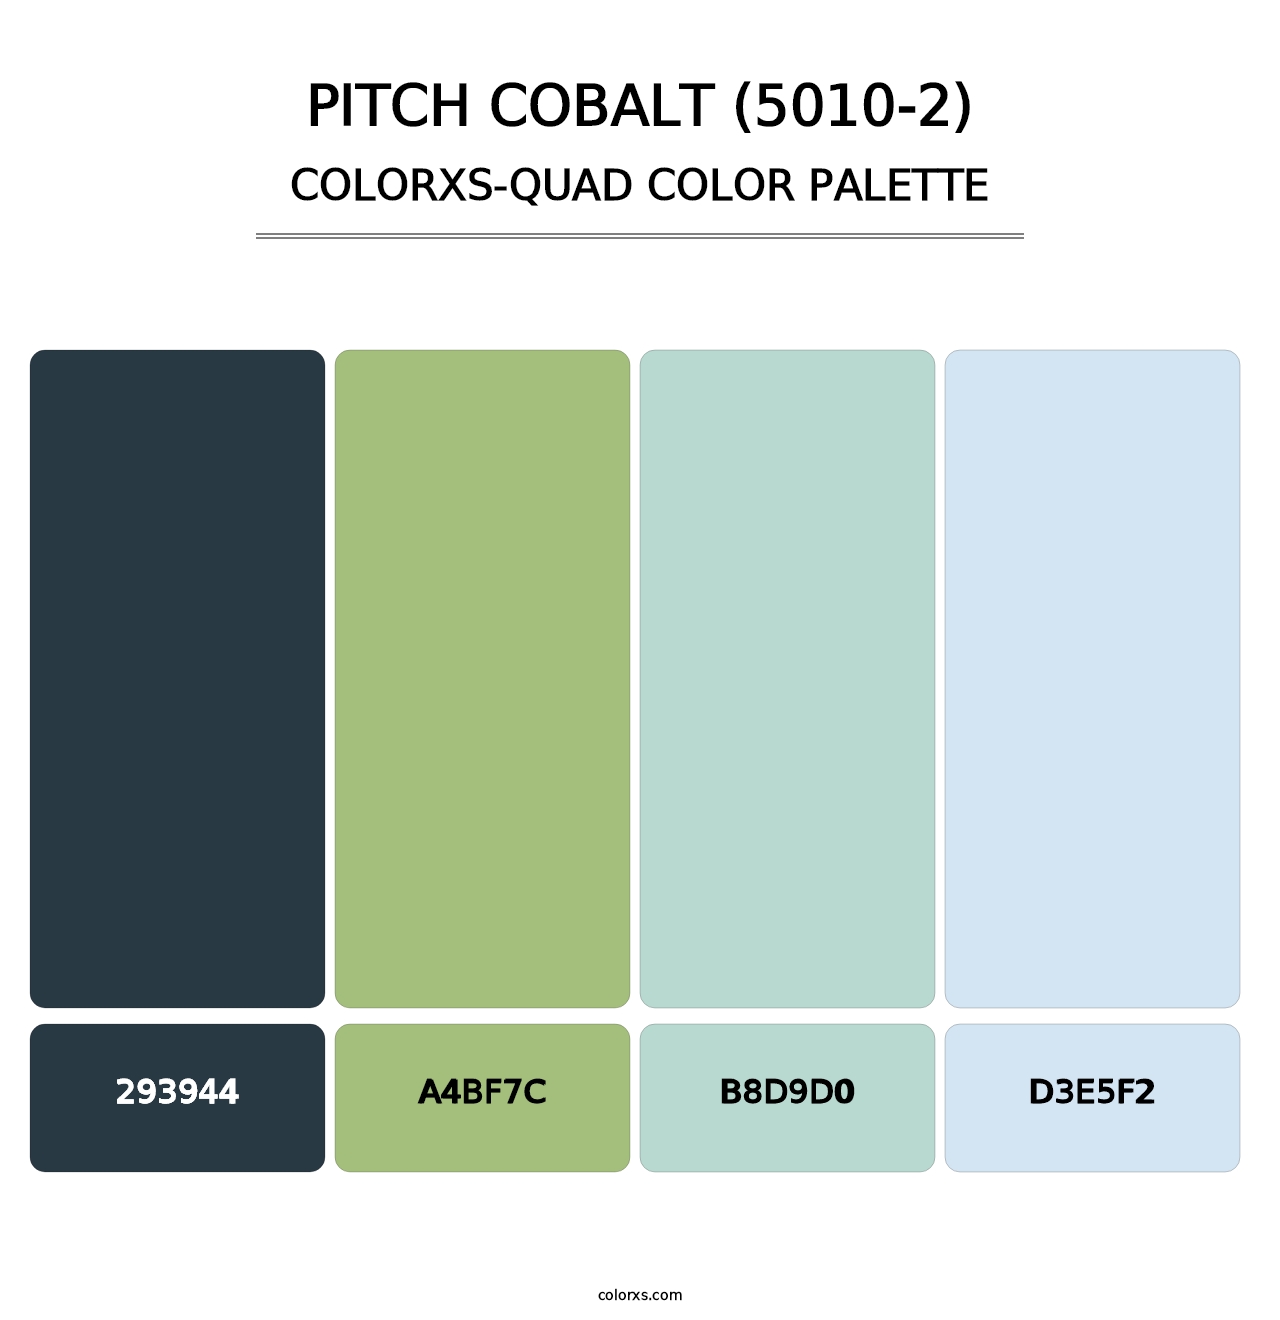 Pitch Cobalt (5010-2) - Colorxs Quad Palette